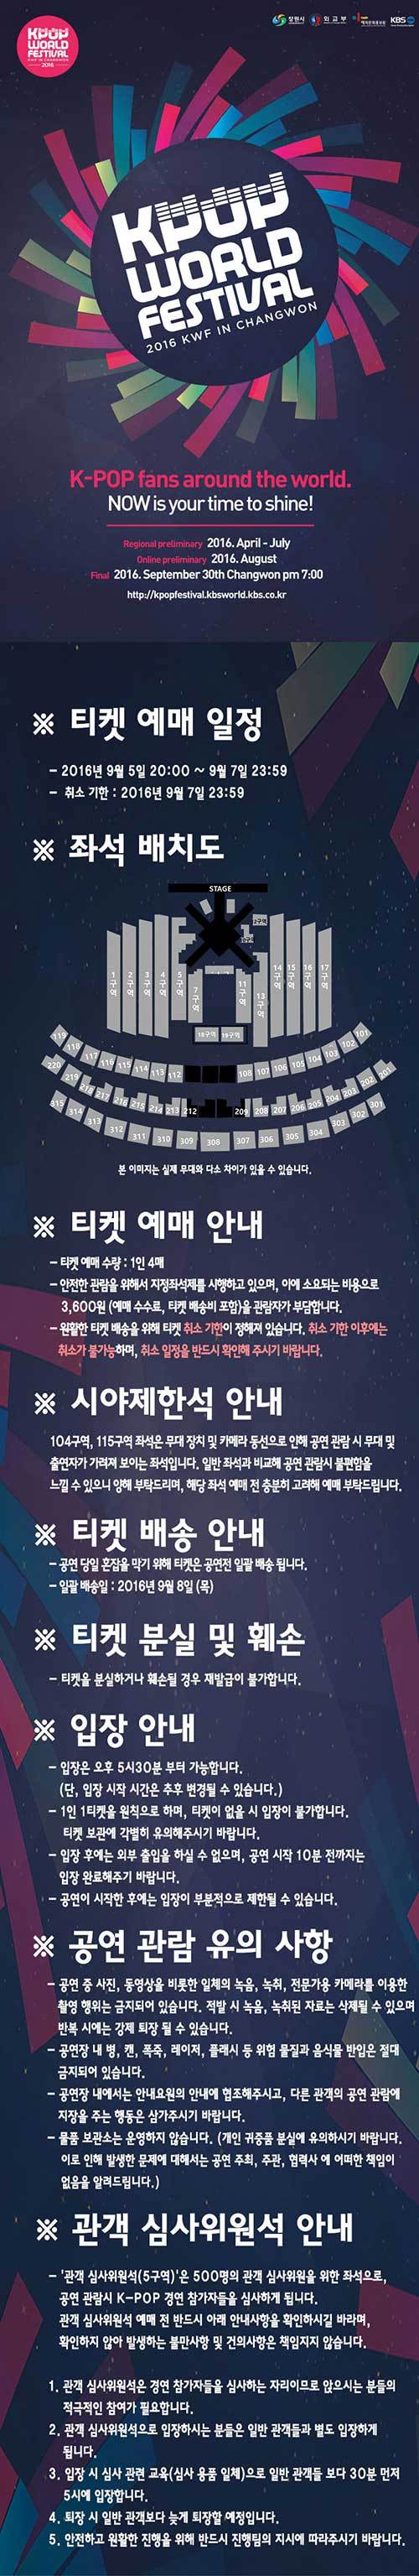 방탄소년단 2016 케이팝 월드 페스티벌 창원